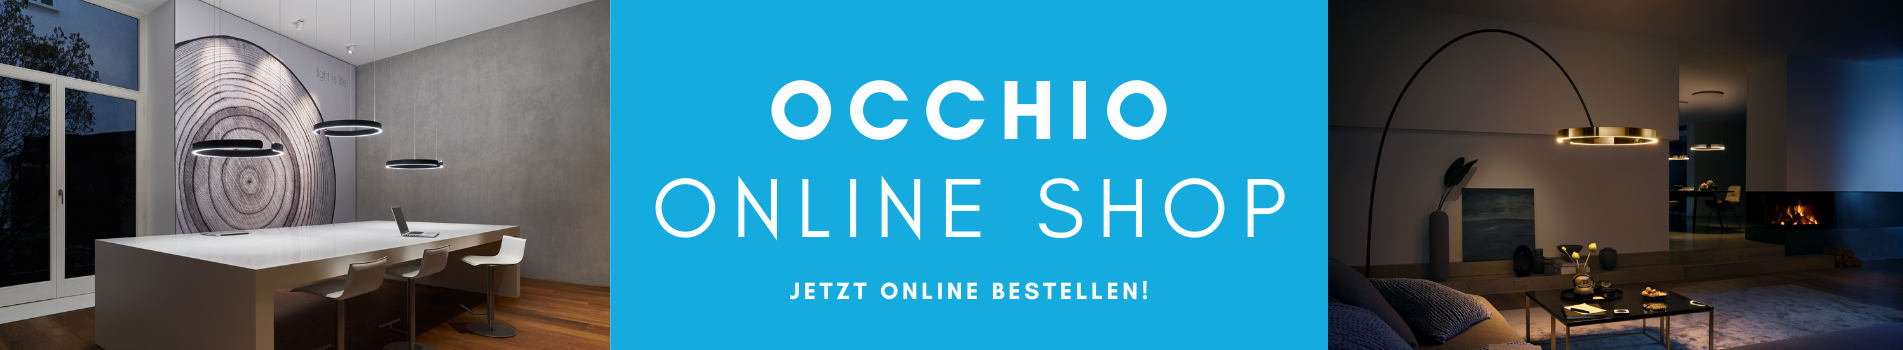 Occhio Online Shop